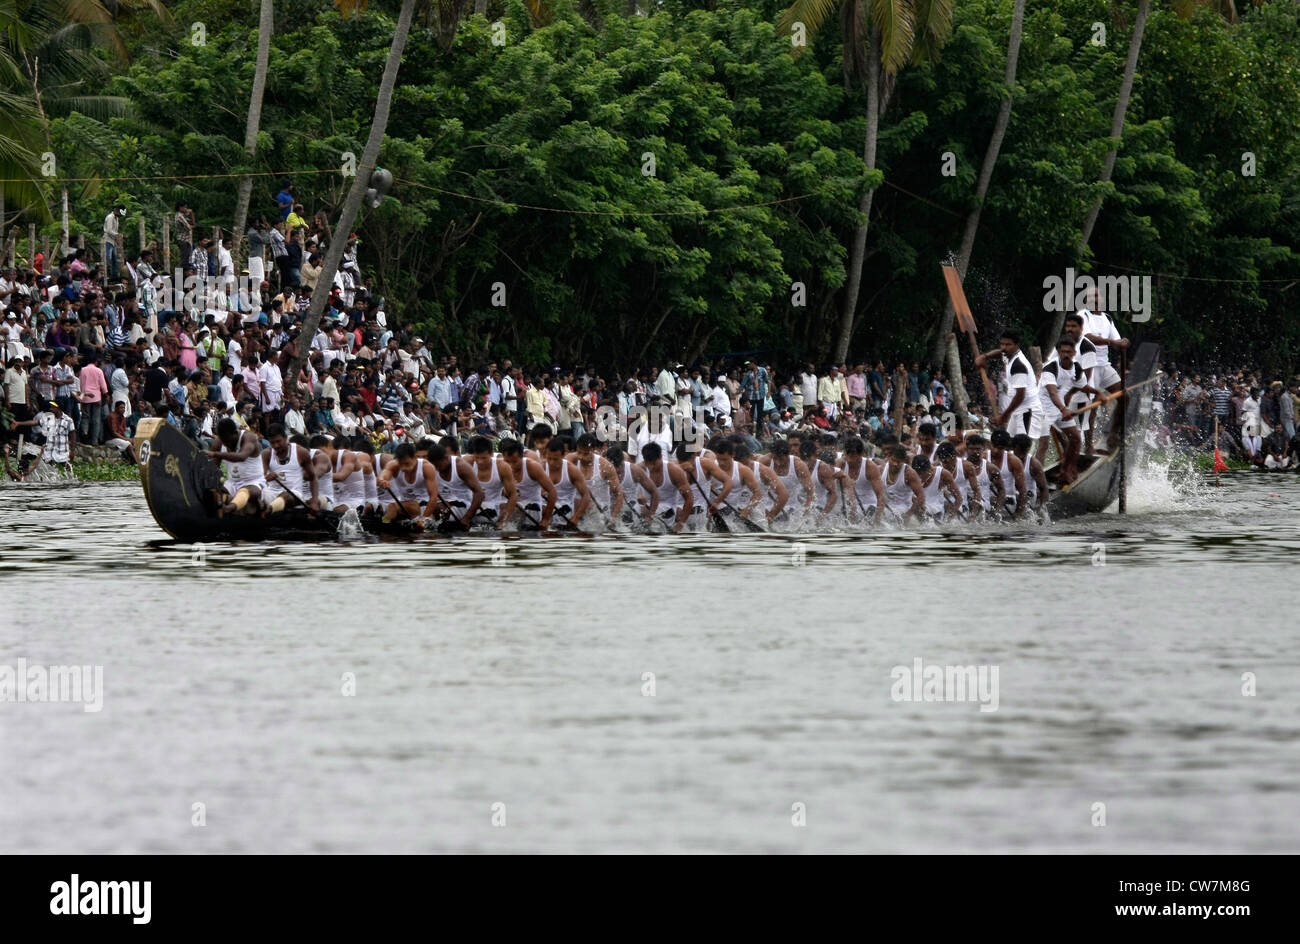 Ruderern aus Nehru Trophäe-Regatta in Alappuzha wieder Wasser früher bekannt als Alleppey, Kerala, Indien Stockfoto